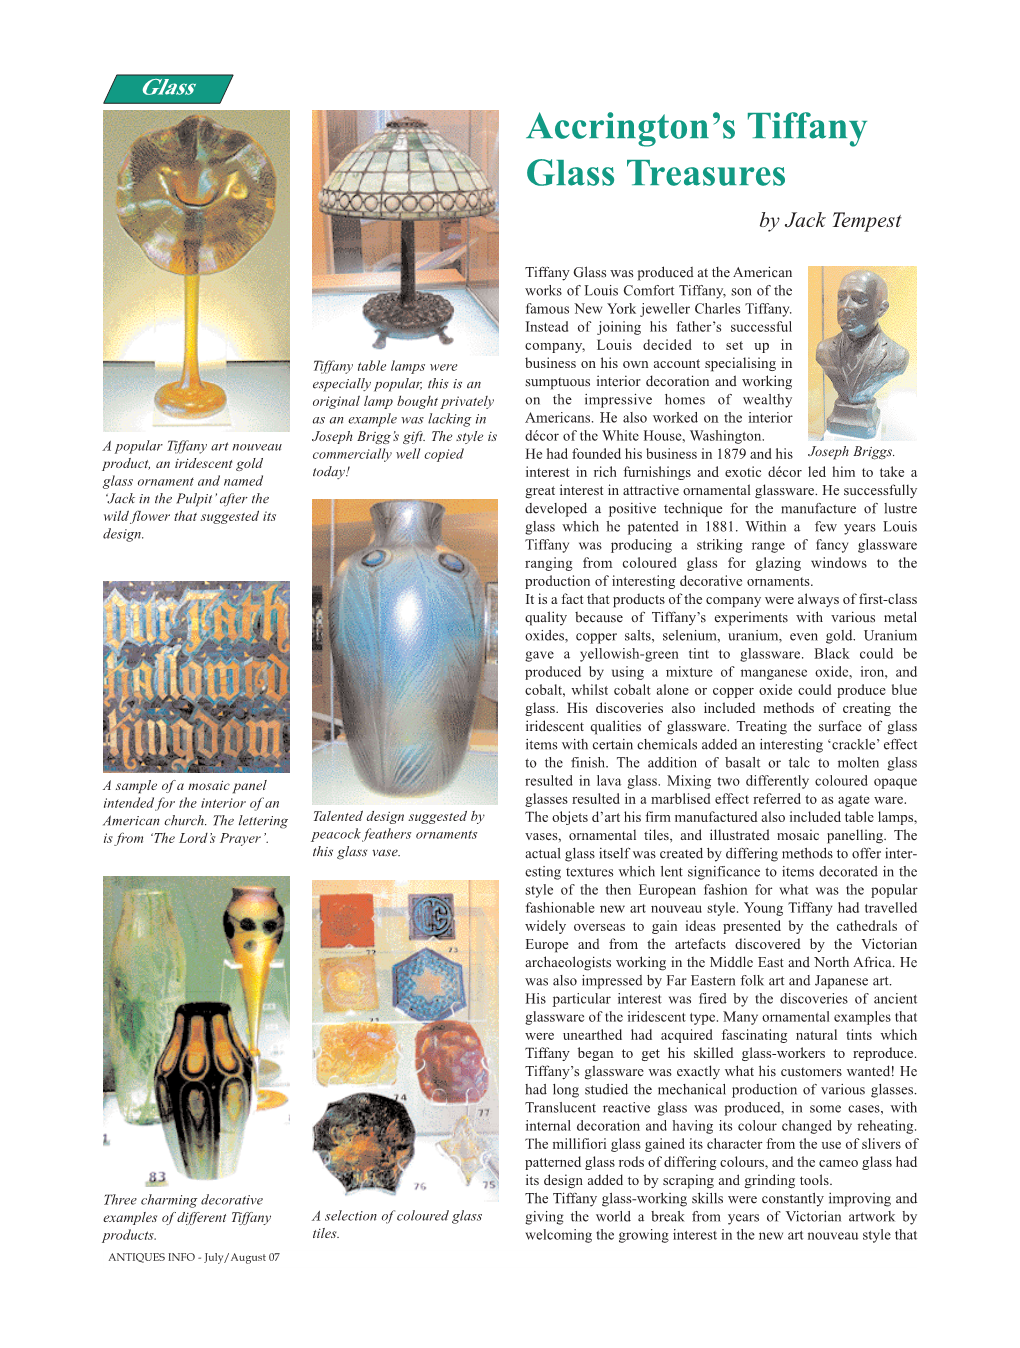 Accrington's Tiffany Glass Treasures